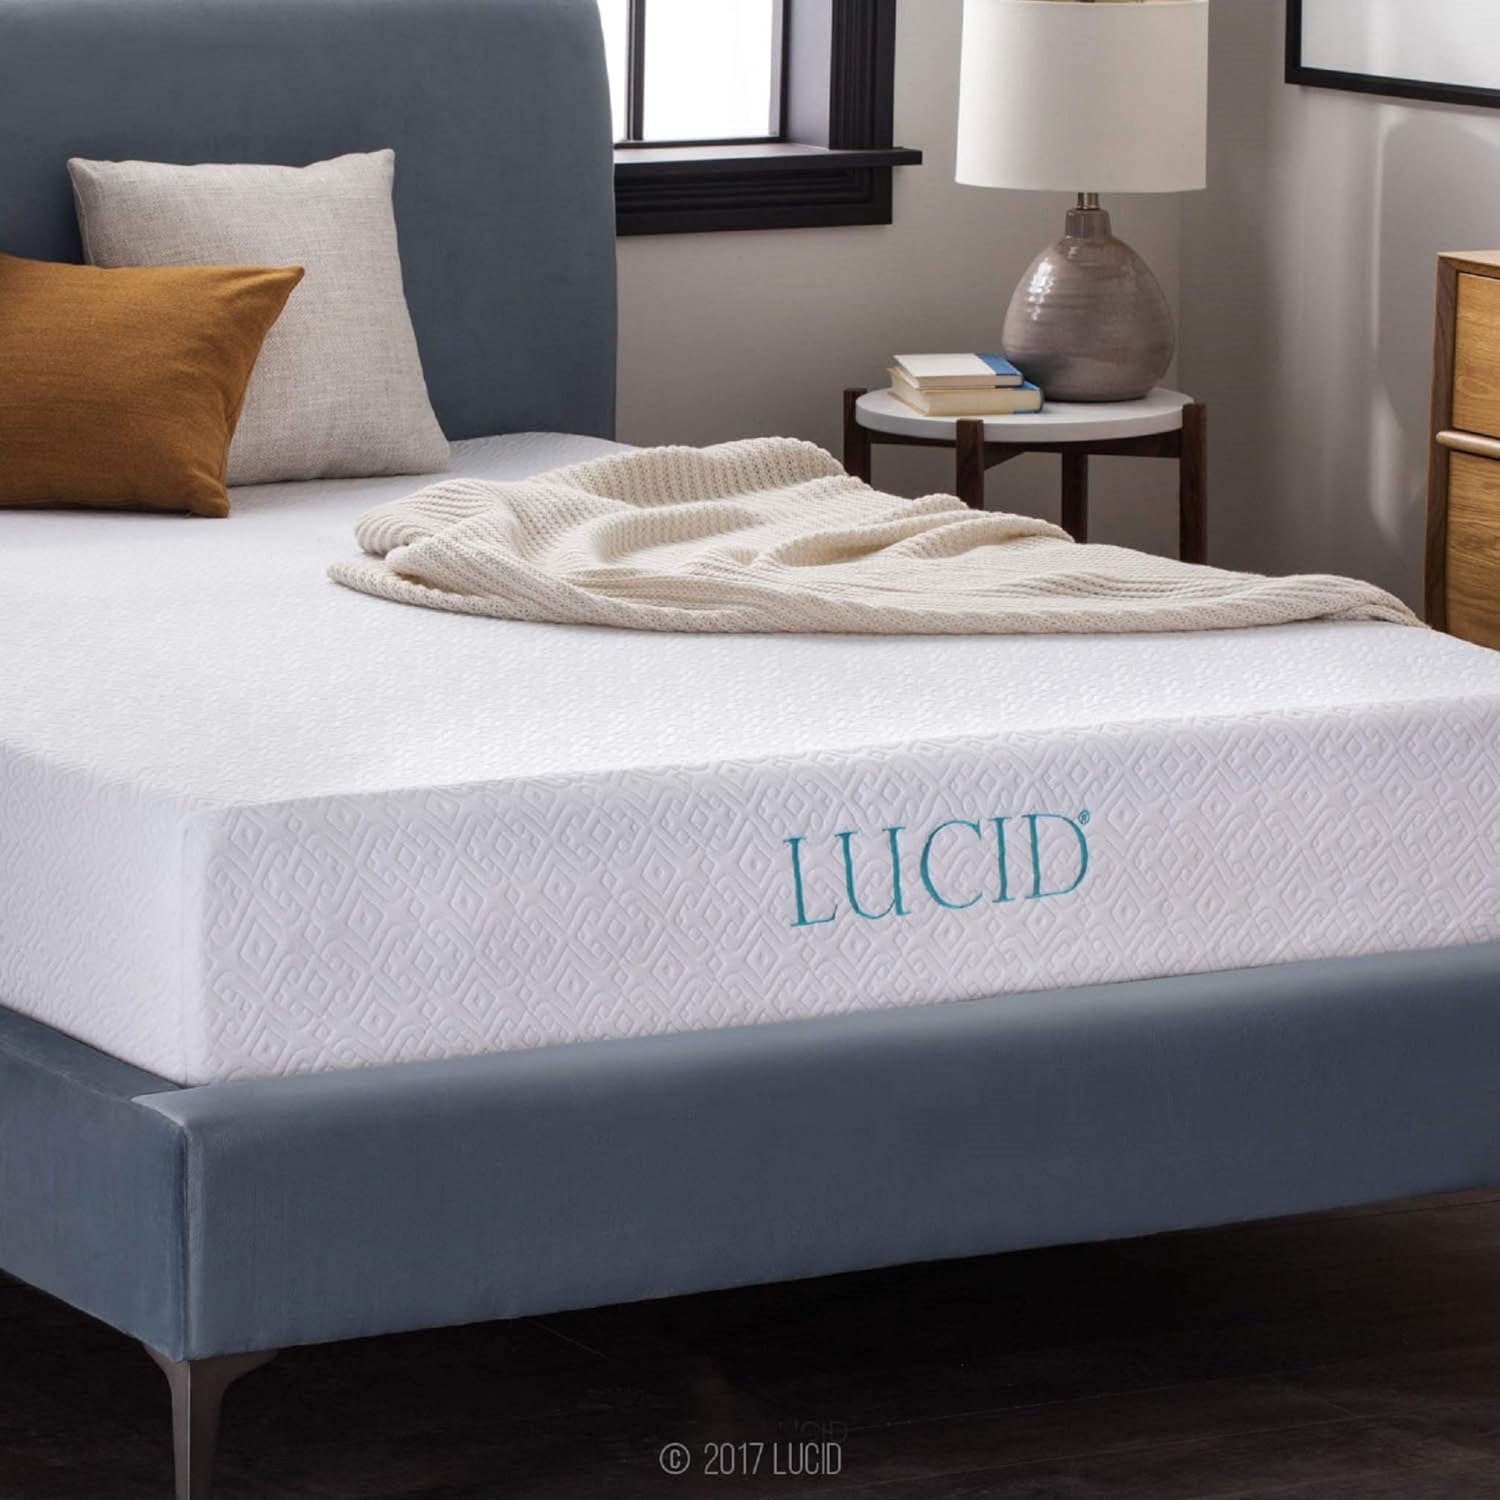 LUCID 10 Inch 2019 Gel Memory Foam Mattress - Medium Firm Feel - CertiPUR-US Certified - 10-Year Warranty - Queen